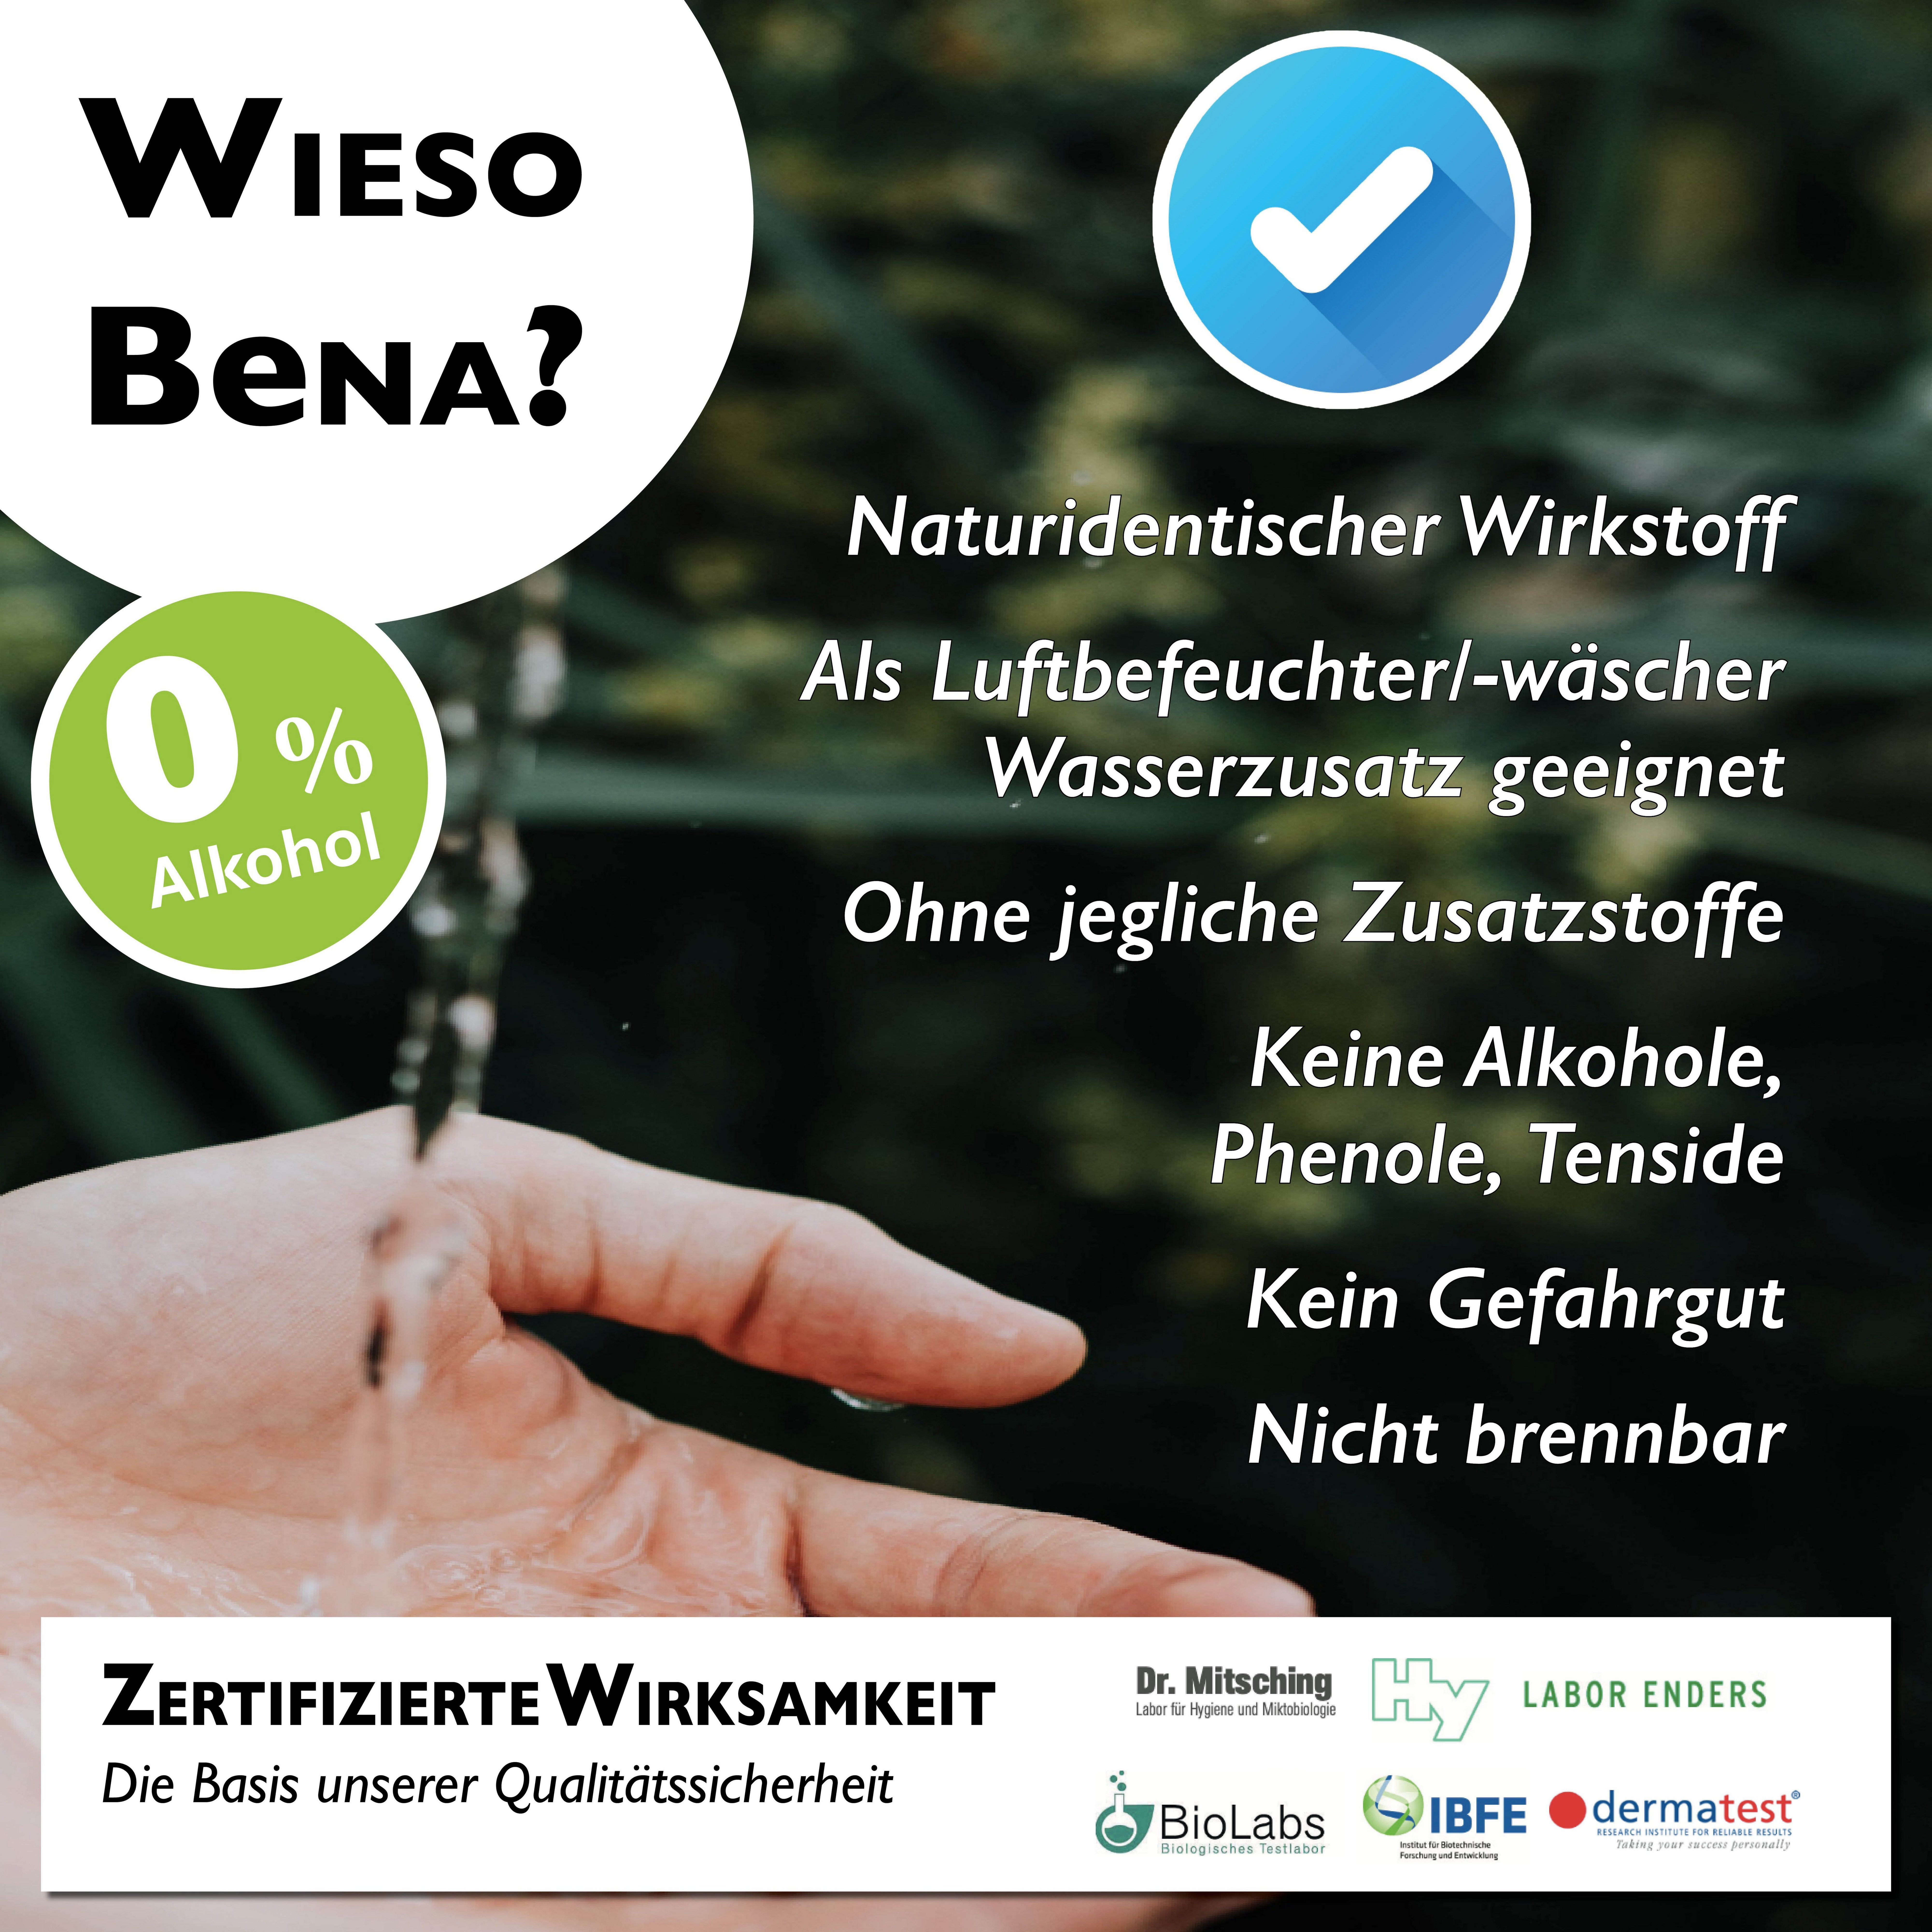 Katzen Spray in Made OHNE BeNA - ml, & # ALKOHOL Hund Hygiene Hunde Reinigungsspray 250 Kleintiere, für Katzen, Germany) Desinfektion # (Desinfektionsmittel